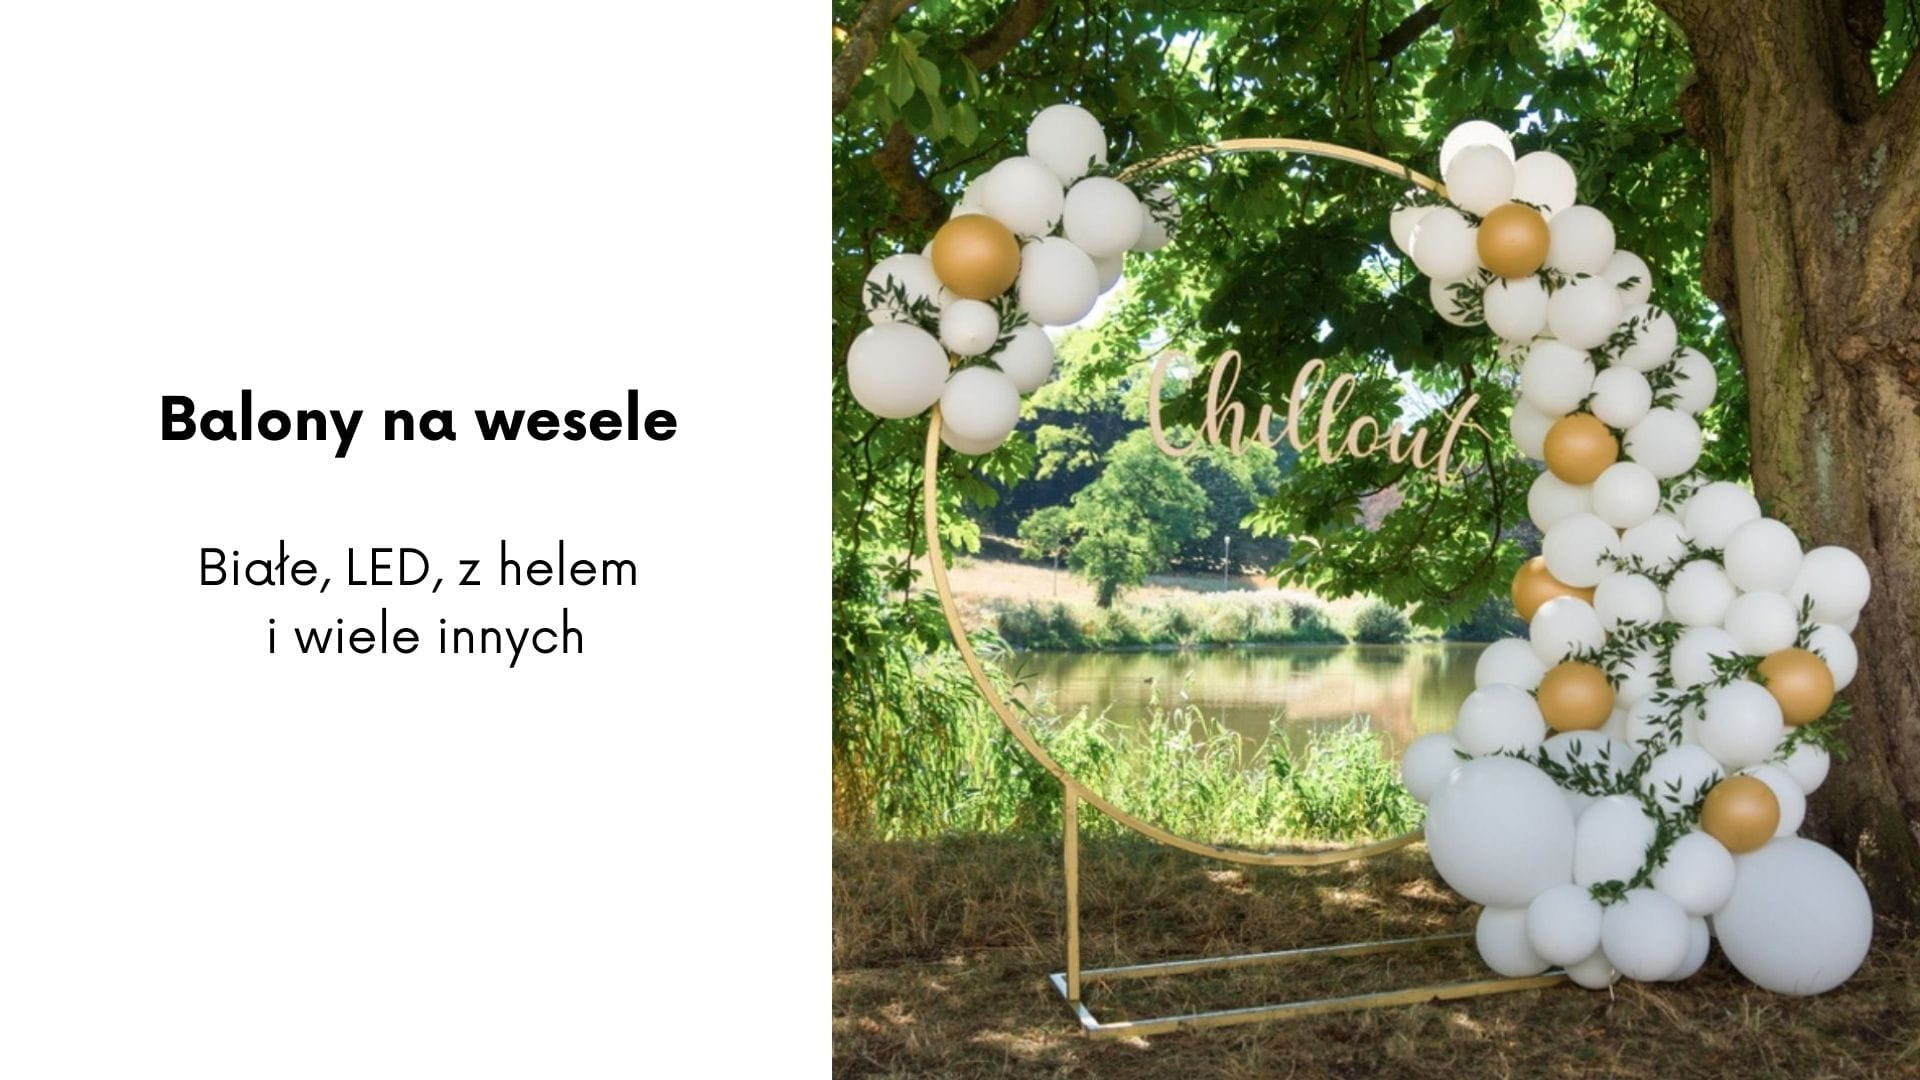 Balony na wesele - białe, LED, z helem i wiele innych